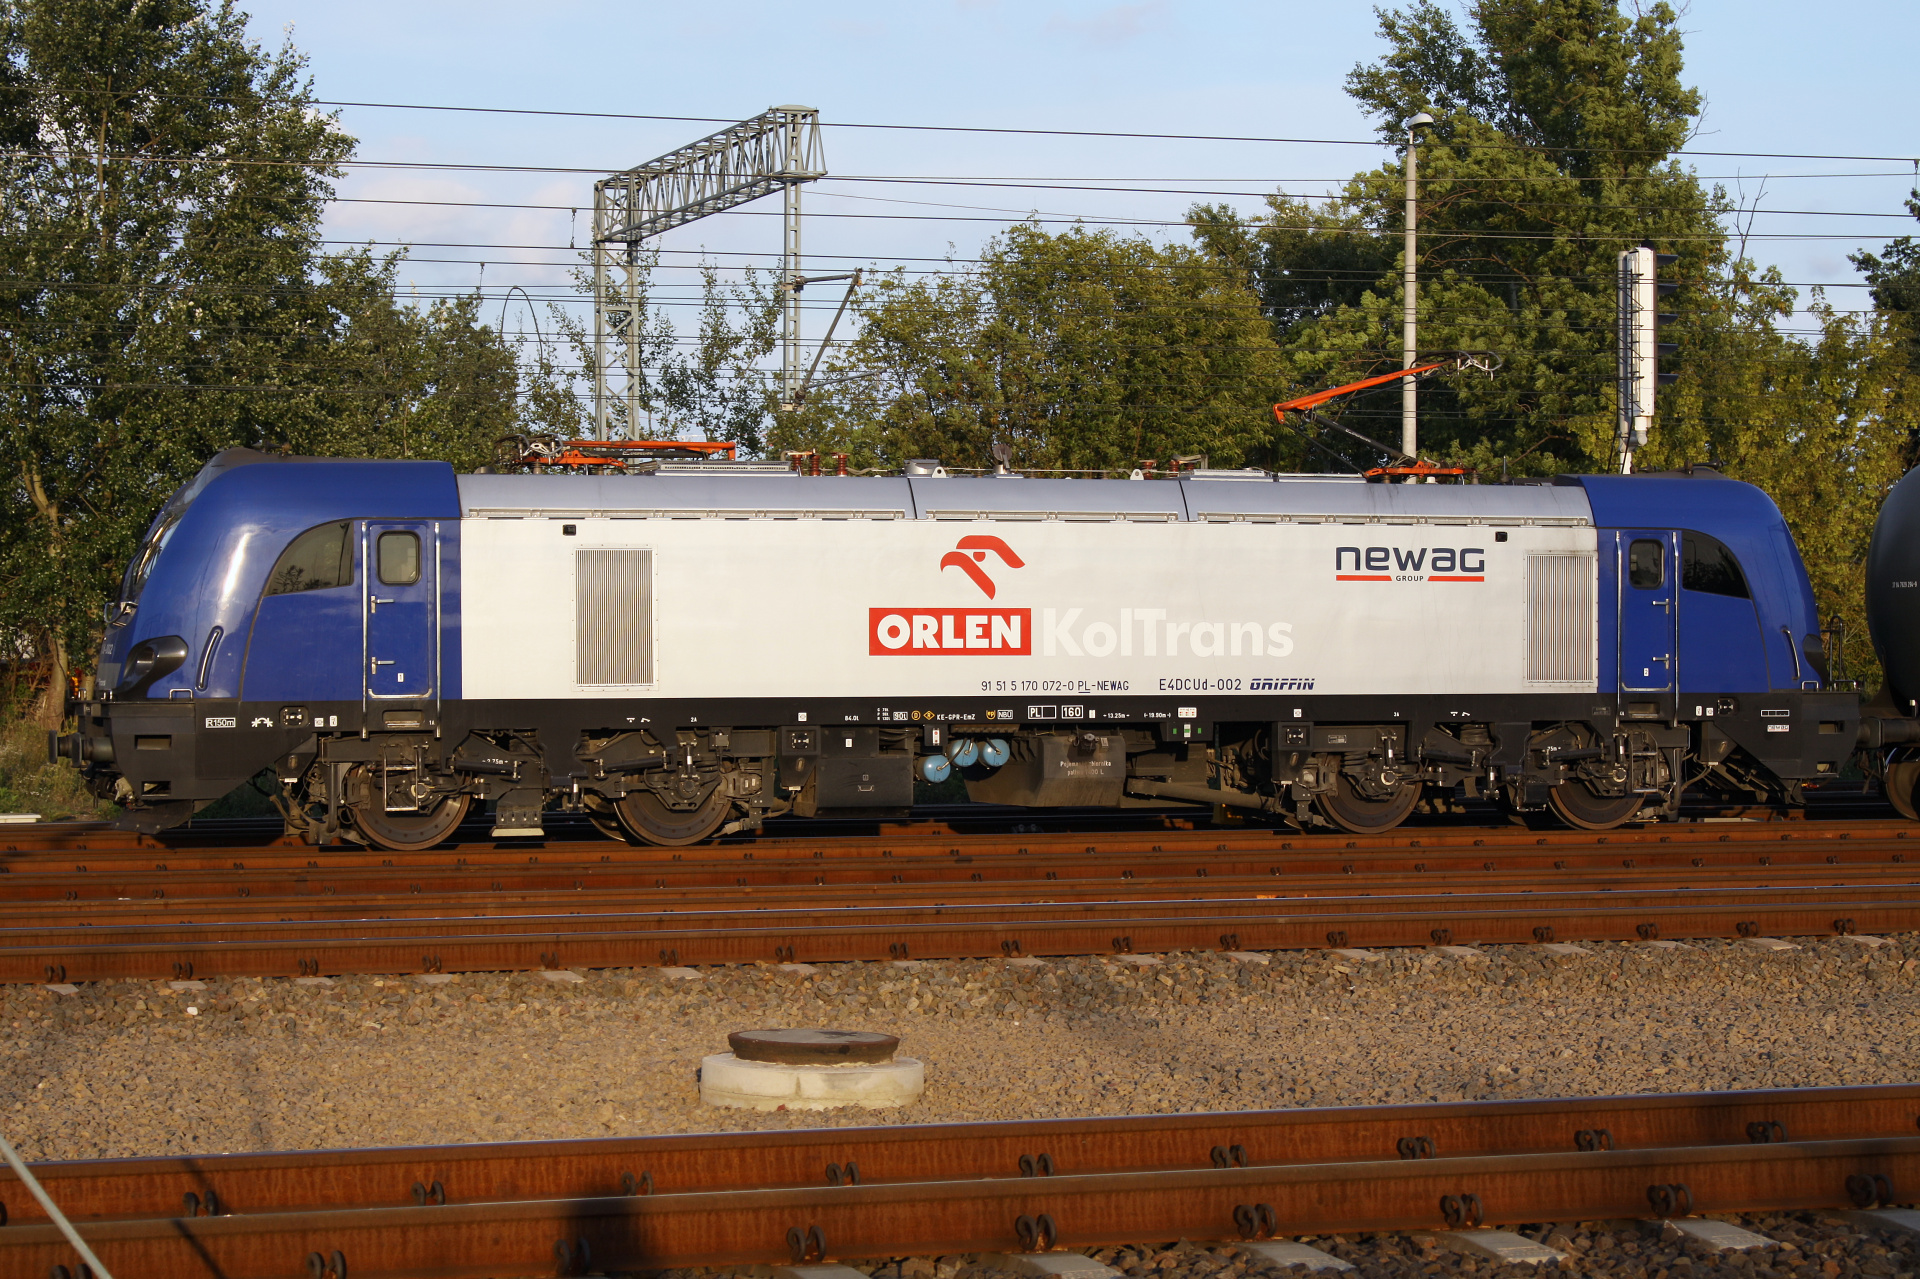 E4DCUd-002 (Pojazdy » Pociągi i lokomotywy » Newag Griffin)